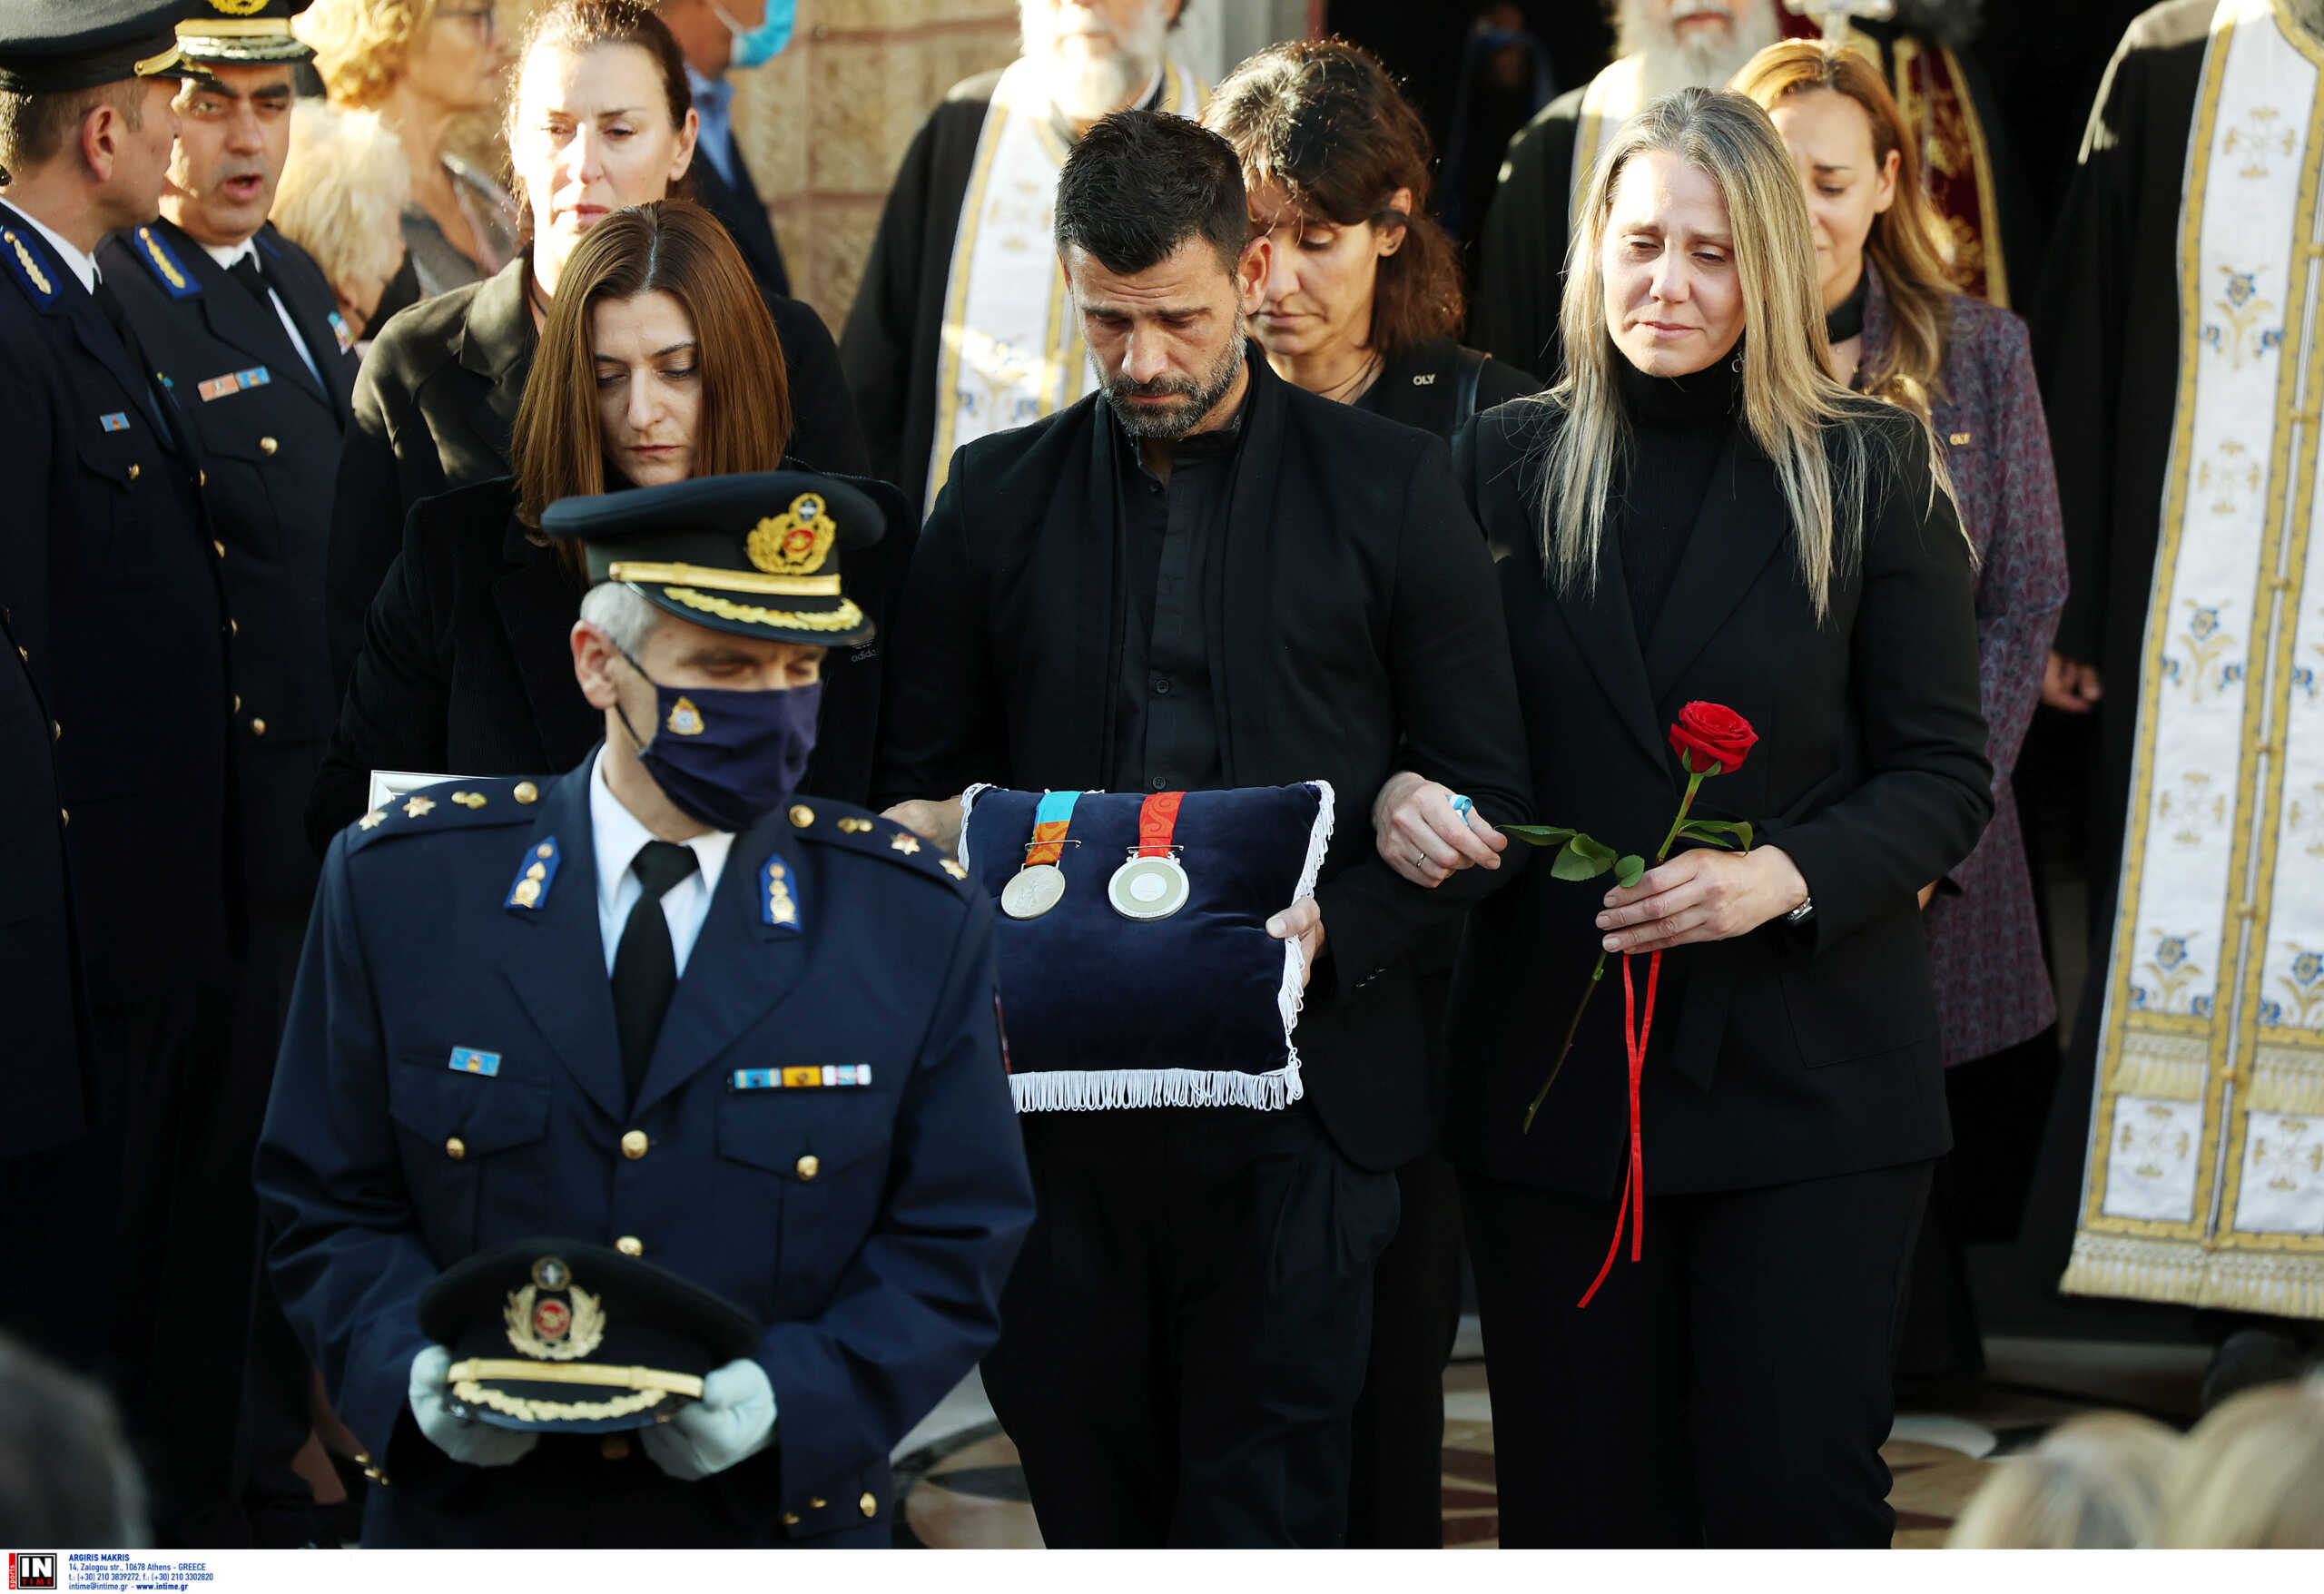 Κηδεία Αλέξανδρου Νικολαΐδη: Ο Μιχάλης Μουρούτσος μετέφερε τα δύο Ολυμπιακά του μετάλλια